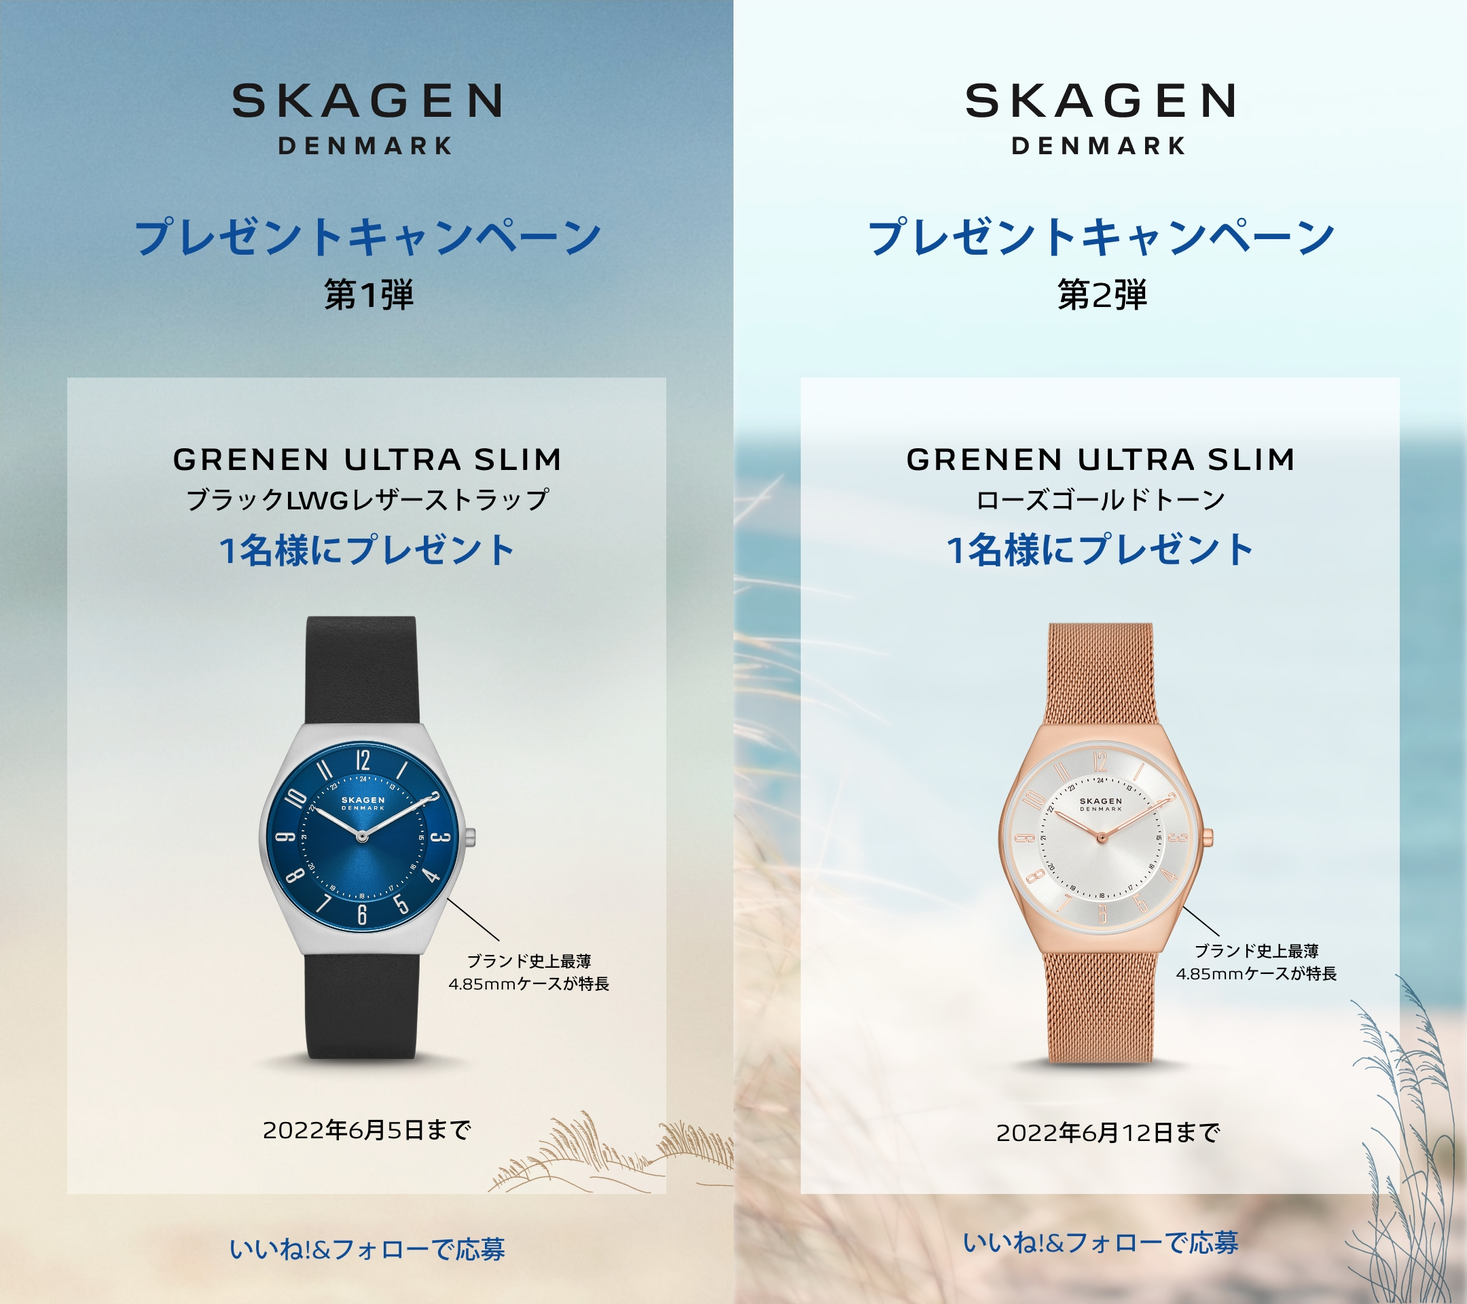 SKAGEN（スカーゲン）日本公式インスタグラム 【フォロワー限定